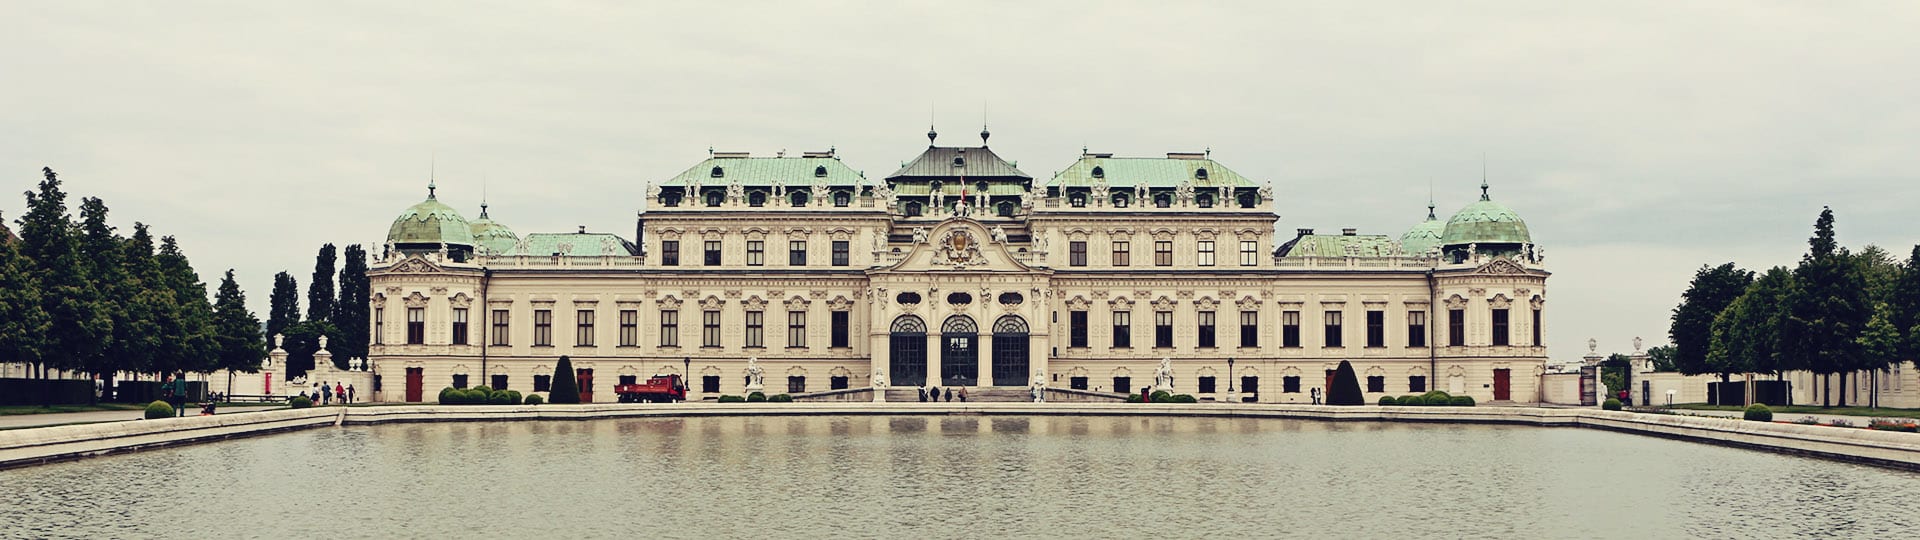 Palácio Belvedere em Viena - O Beijo de Klimt - 03